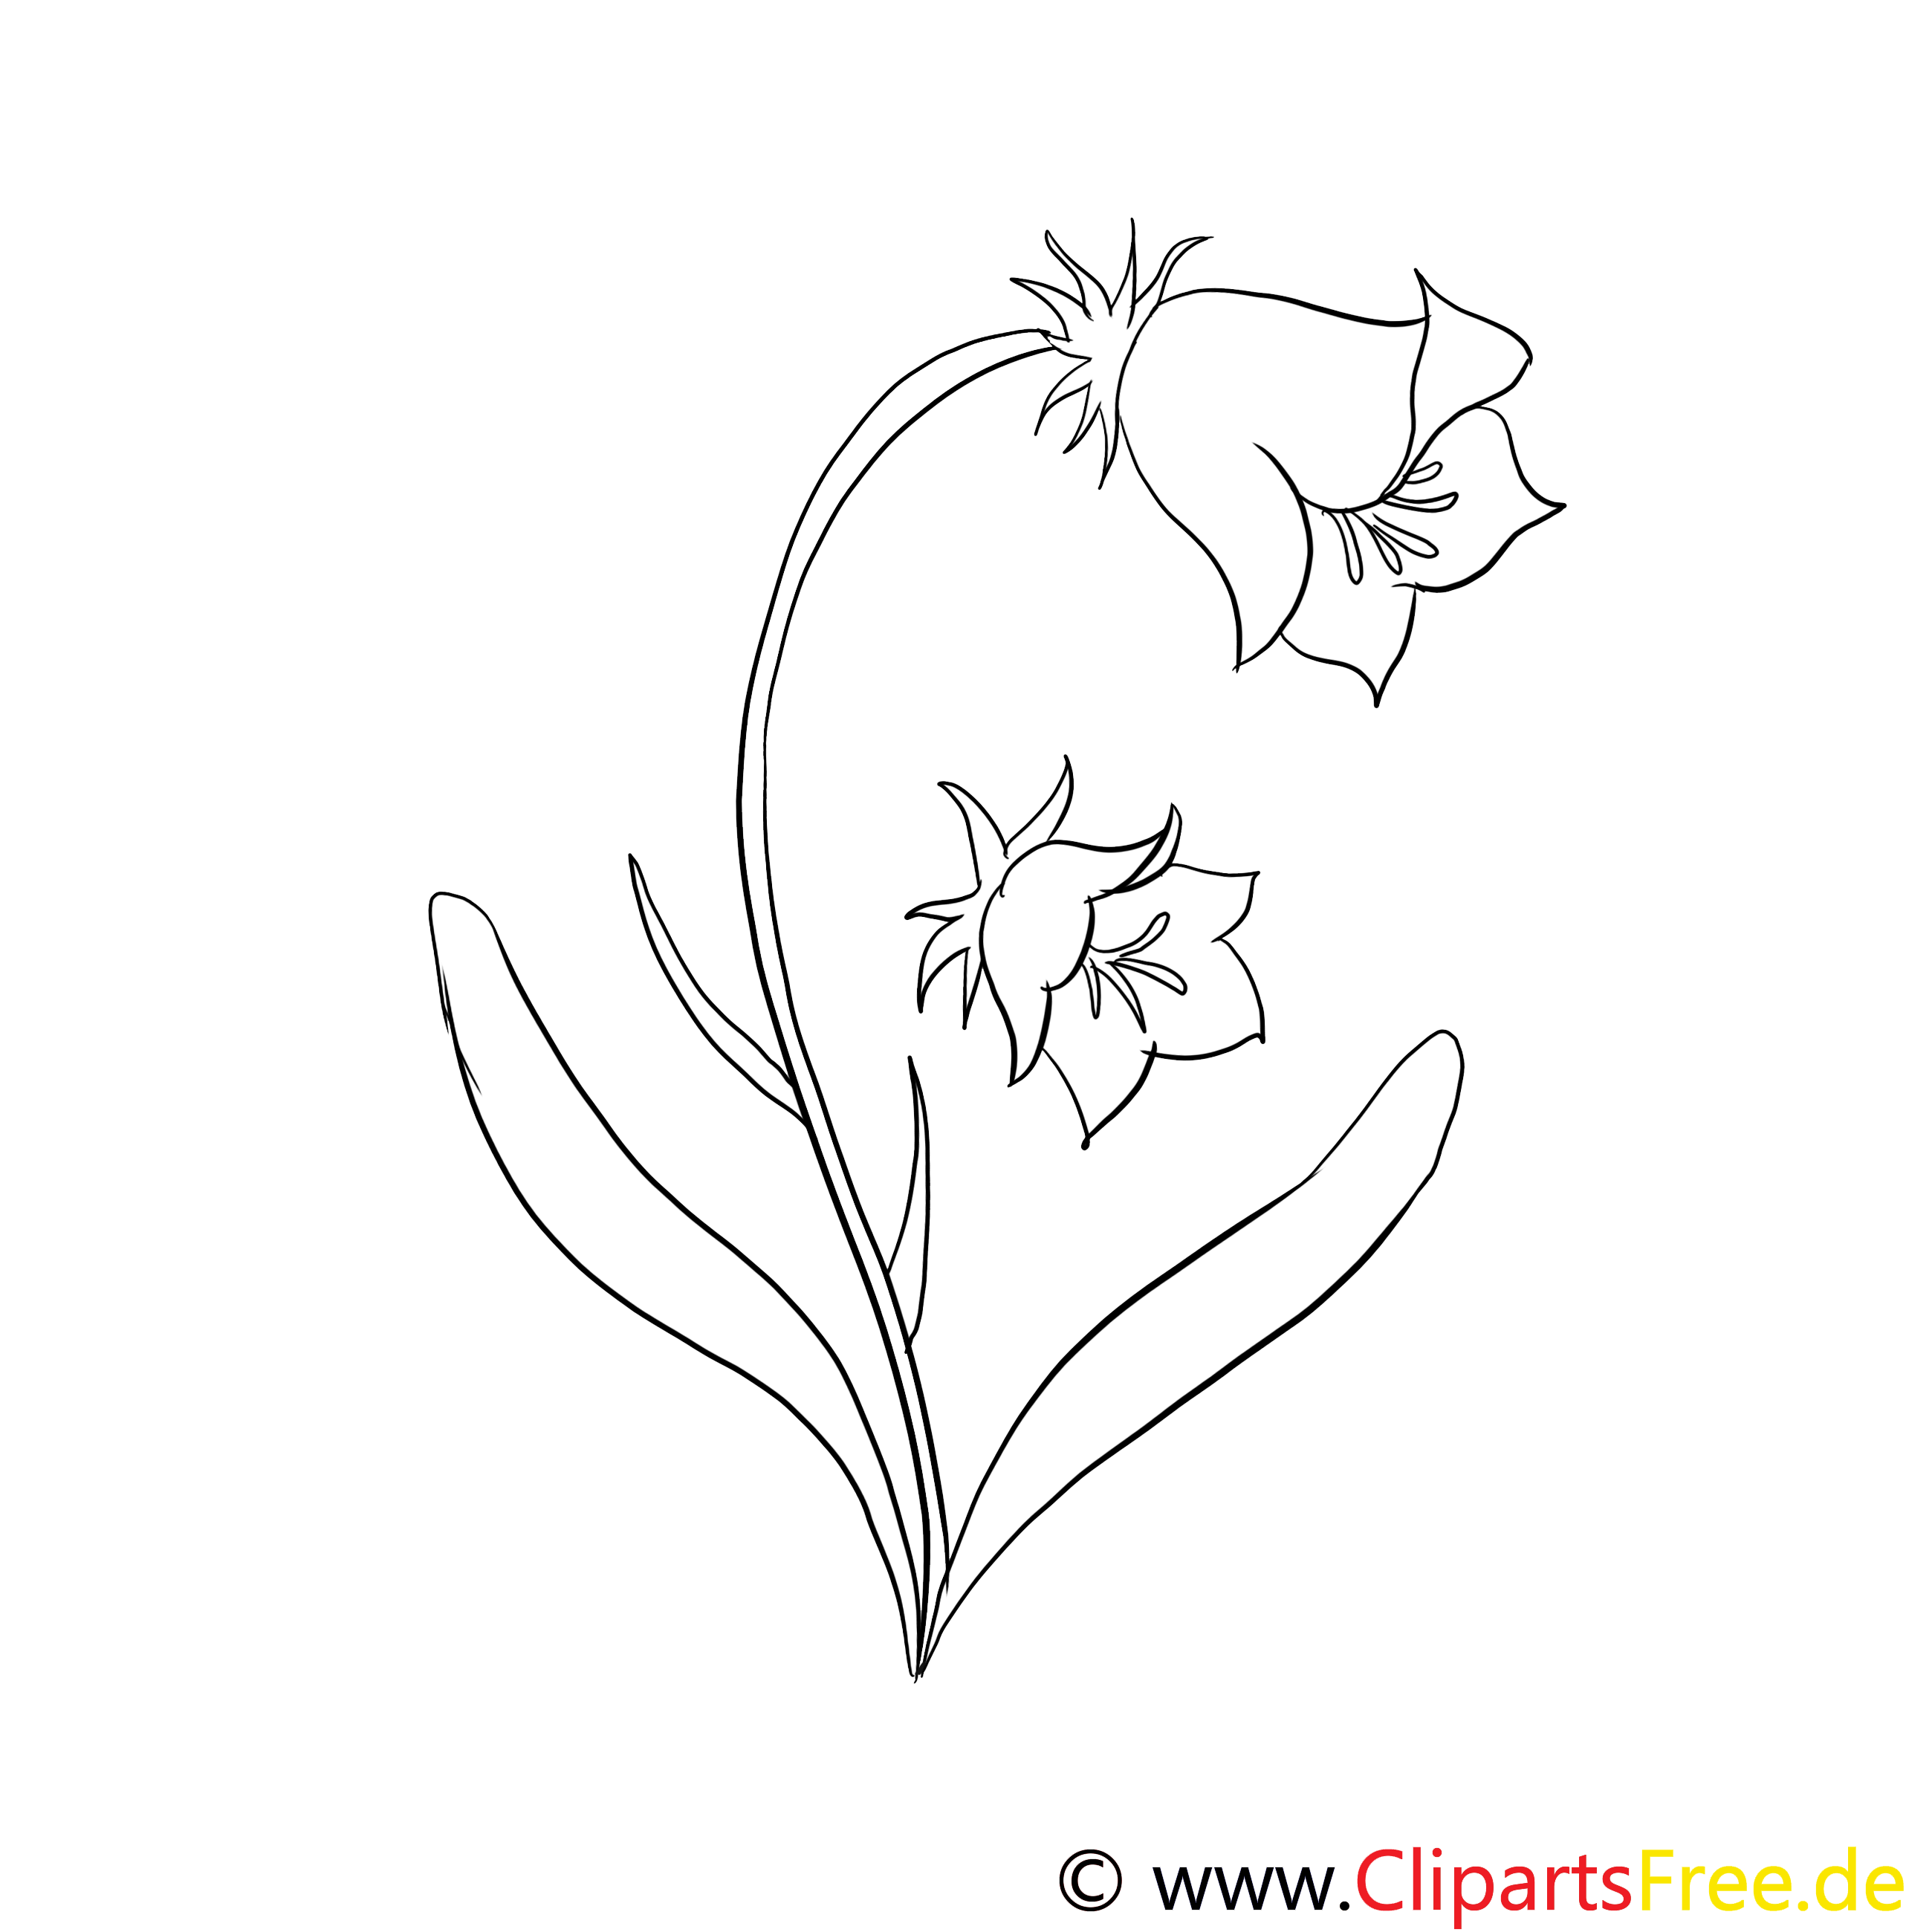 Clochette clip art – Fleurs image à colorier